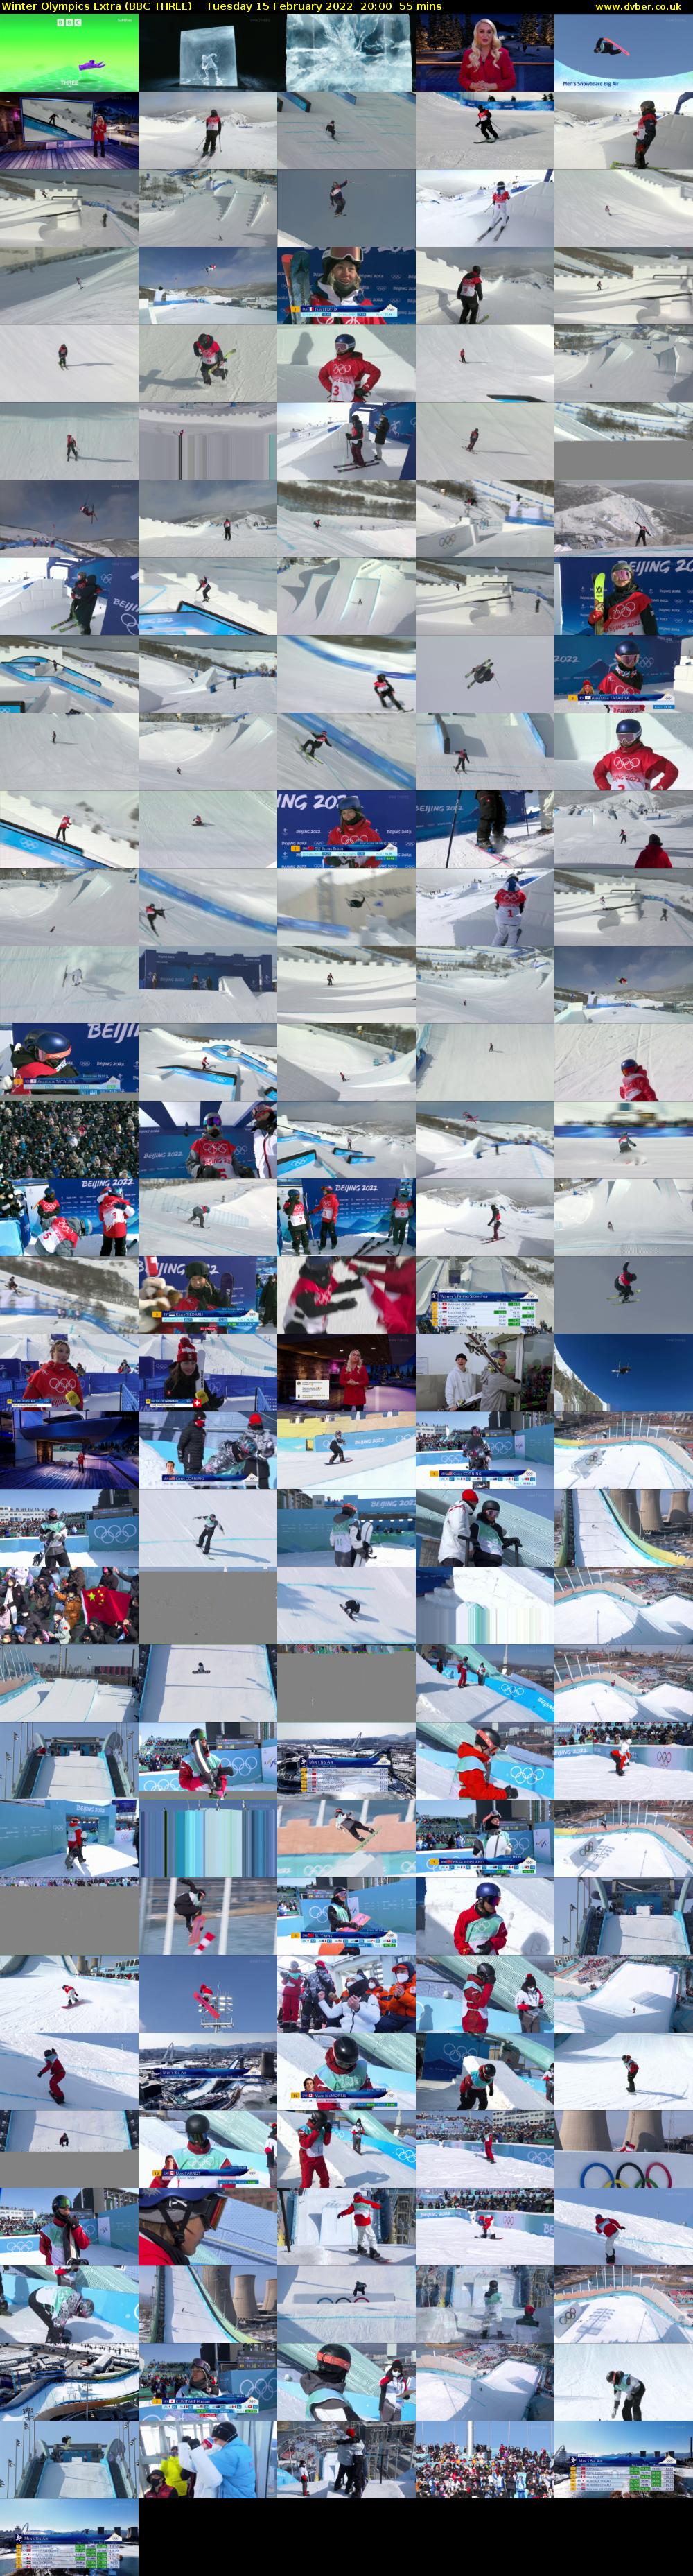 Winter Olympics Extra (BBC THREE) Tuesday 15 February 2022 20:00 - 20:55